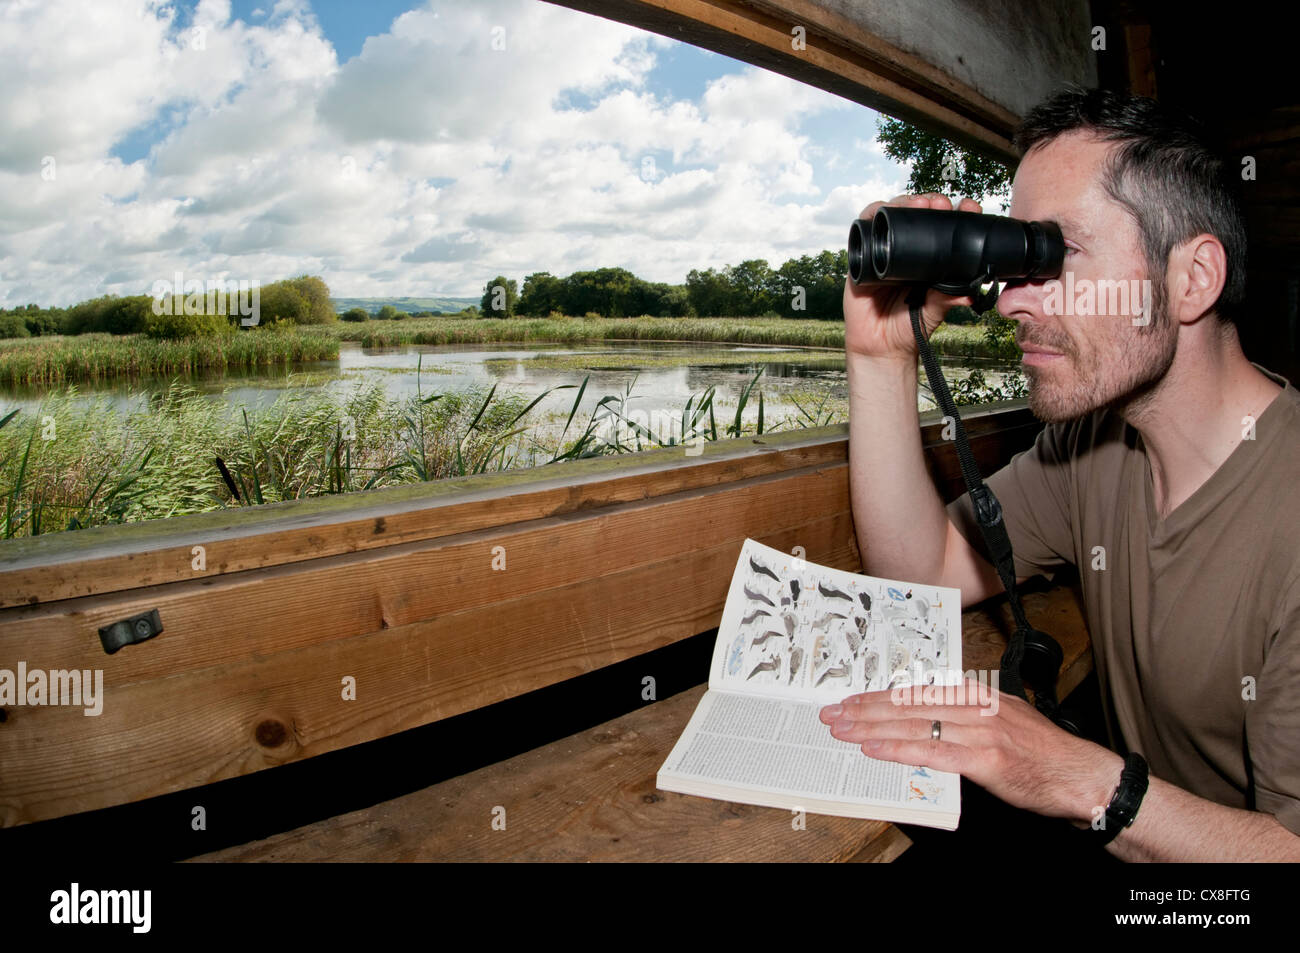 Birdwatcher mirando a través de binoculares y utilizando un libro de identificación de aves, dentro de un público ocultar, en una mañana soleada Foto de stock